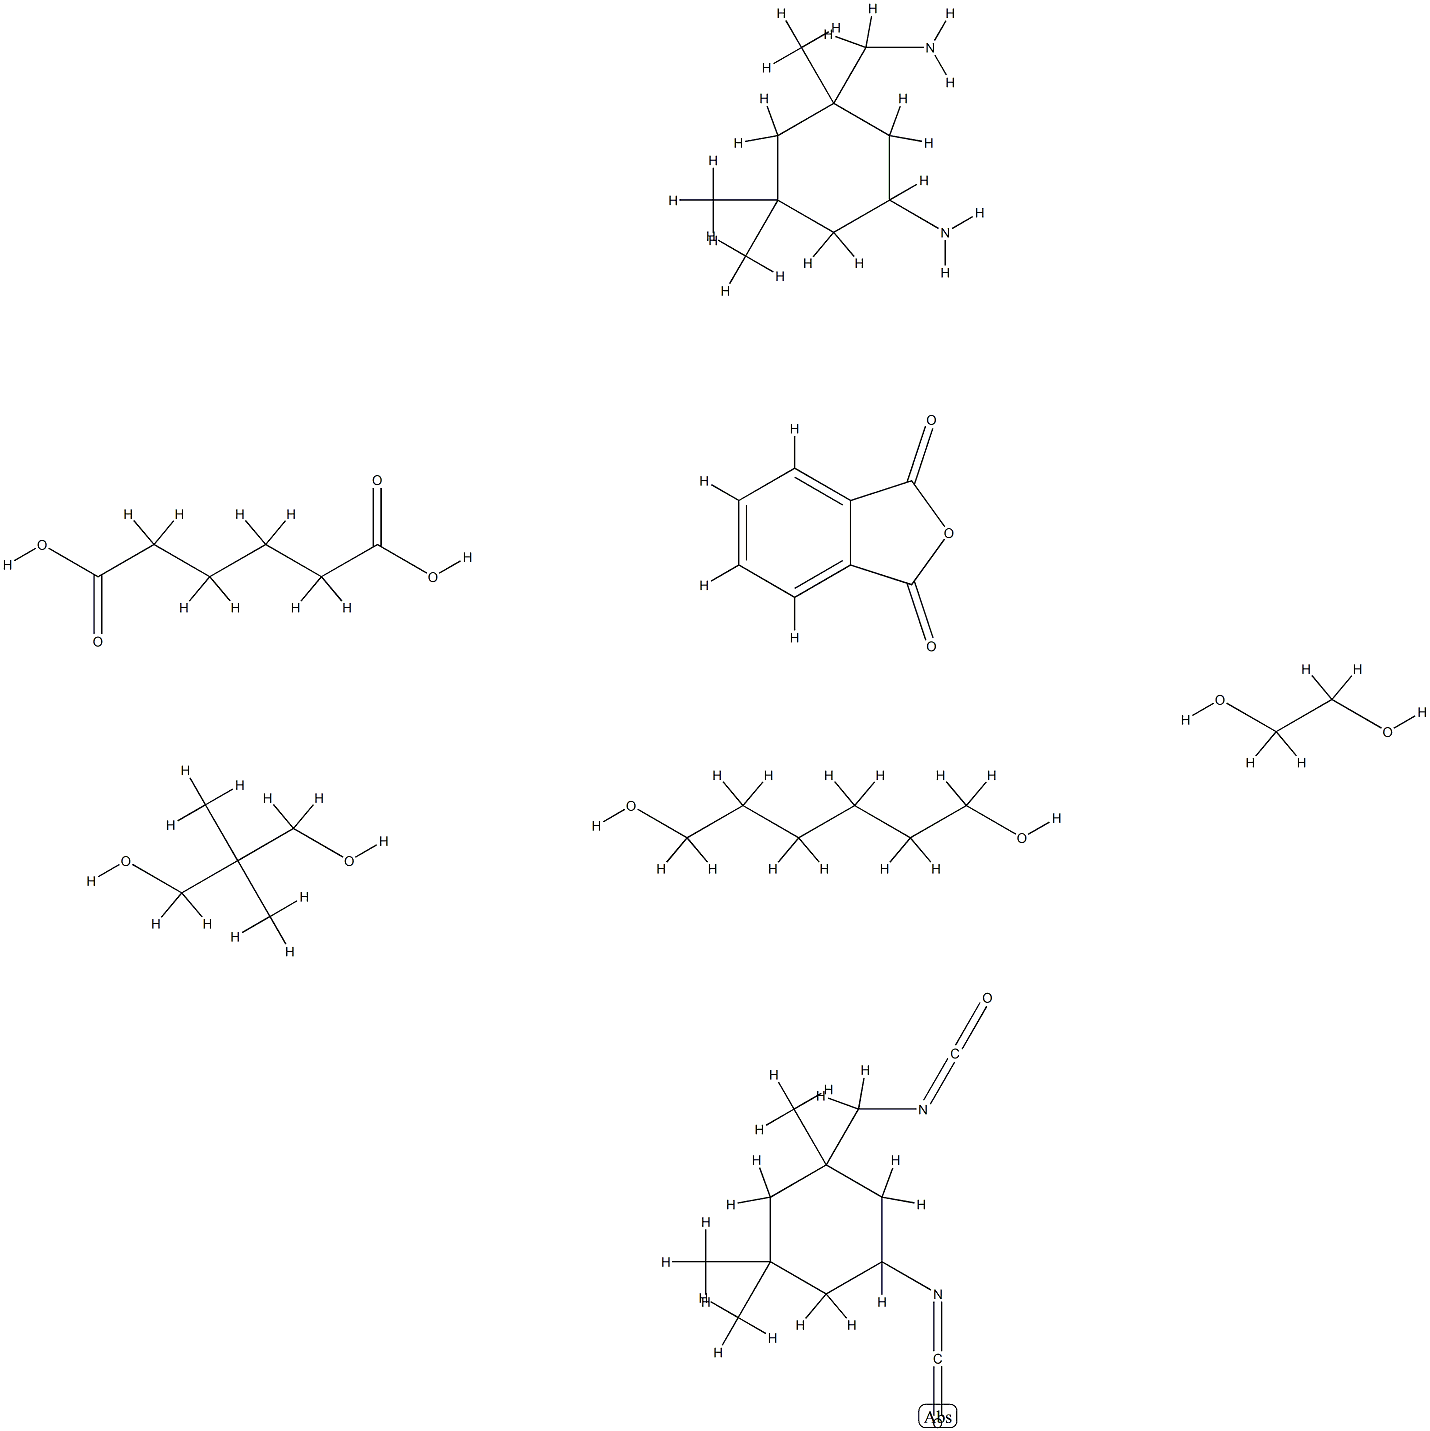 헥산디온산,5-아미노-1,3,3-트리메틸시클로헥산-메탄아민,2,2-디메틸-1,3-프로판디올,1,2-에탄디올,1,6-헥산디올,1,3-이소벤조푸란디온및5와의중합체-이소시아네이토-1-(이소시아네이토메틸)-1,3,3-트리메틸시클로헥산 구조식 이미지